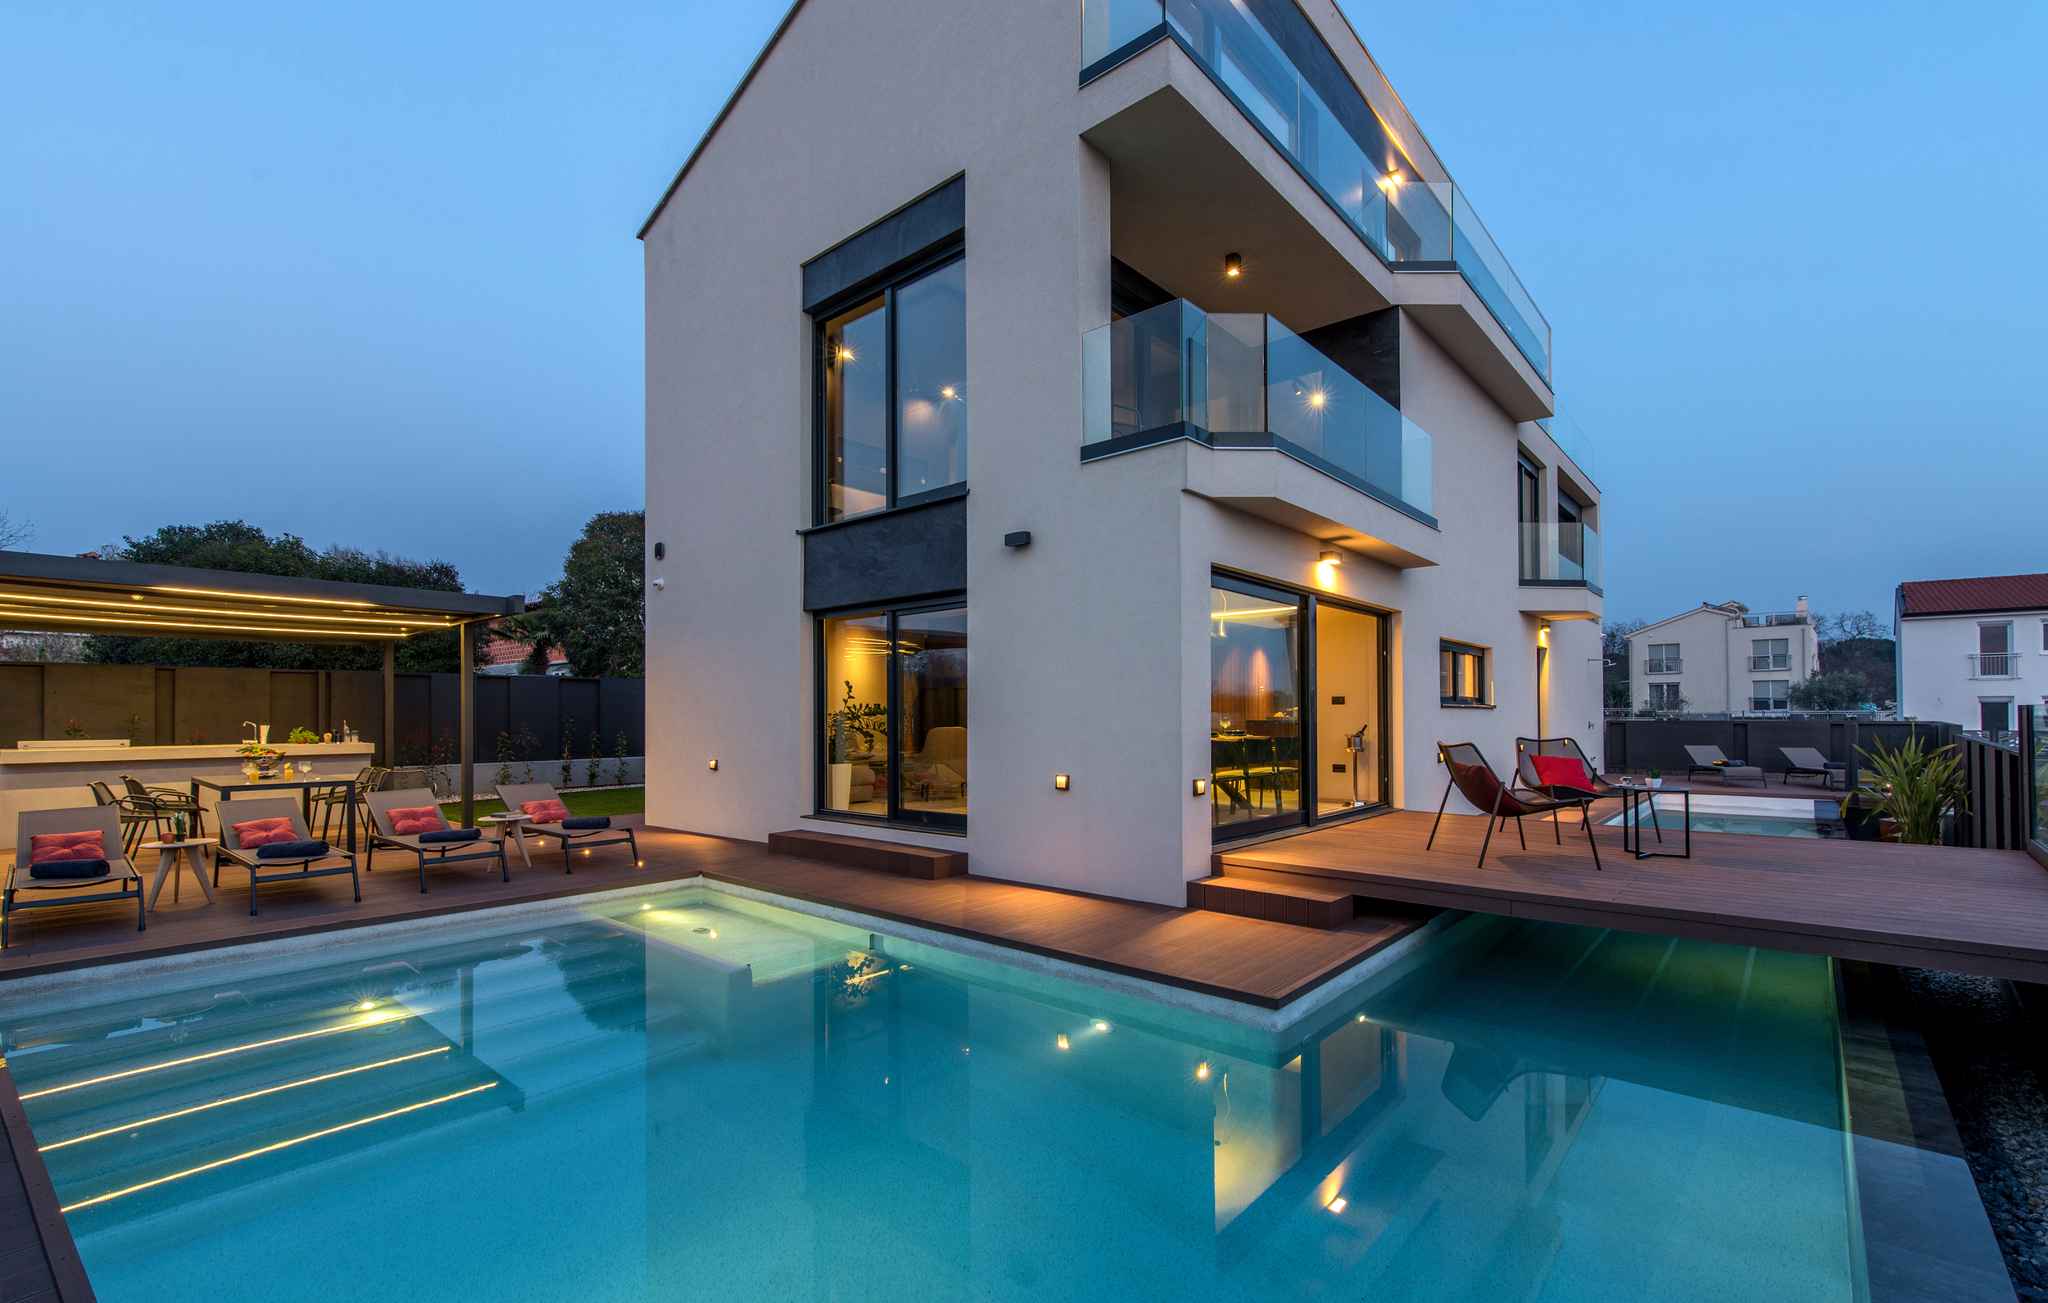 Villa mit Pool in Strandnähe Ferienhaus in Istrien